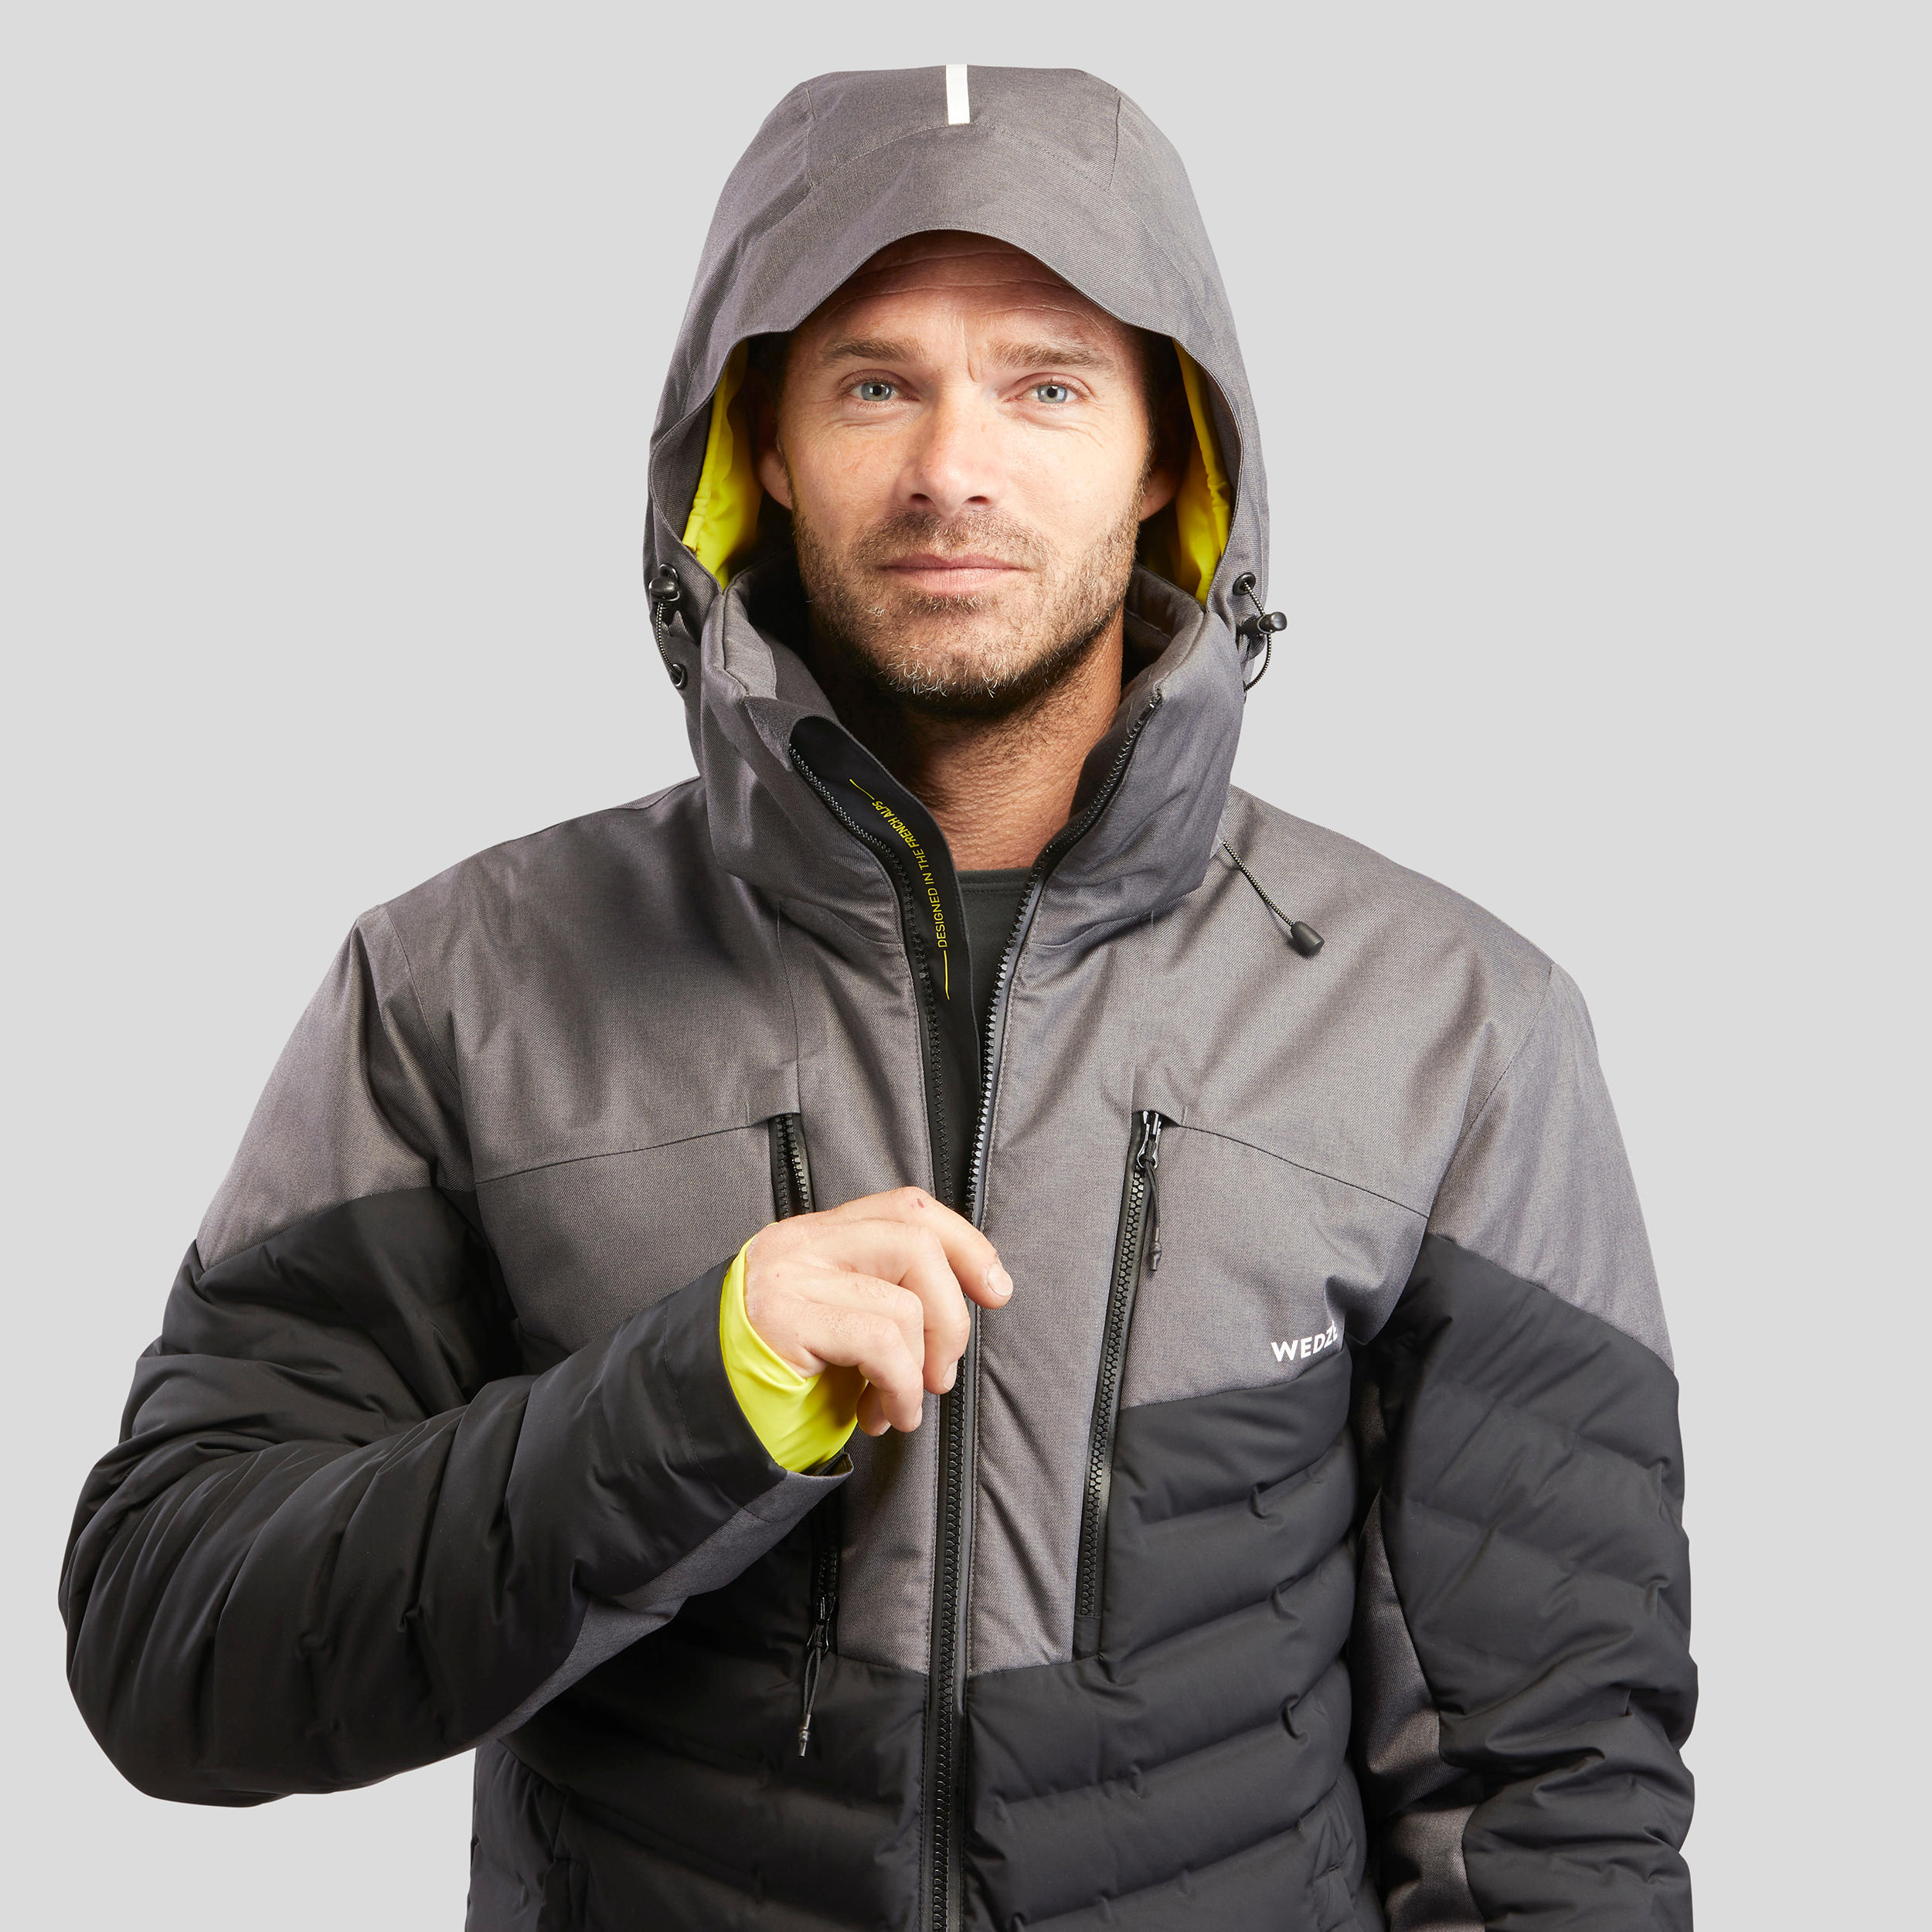 Manteau de ski alpin homme - 900 Warm gris/noir - WEDZE